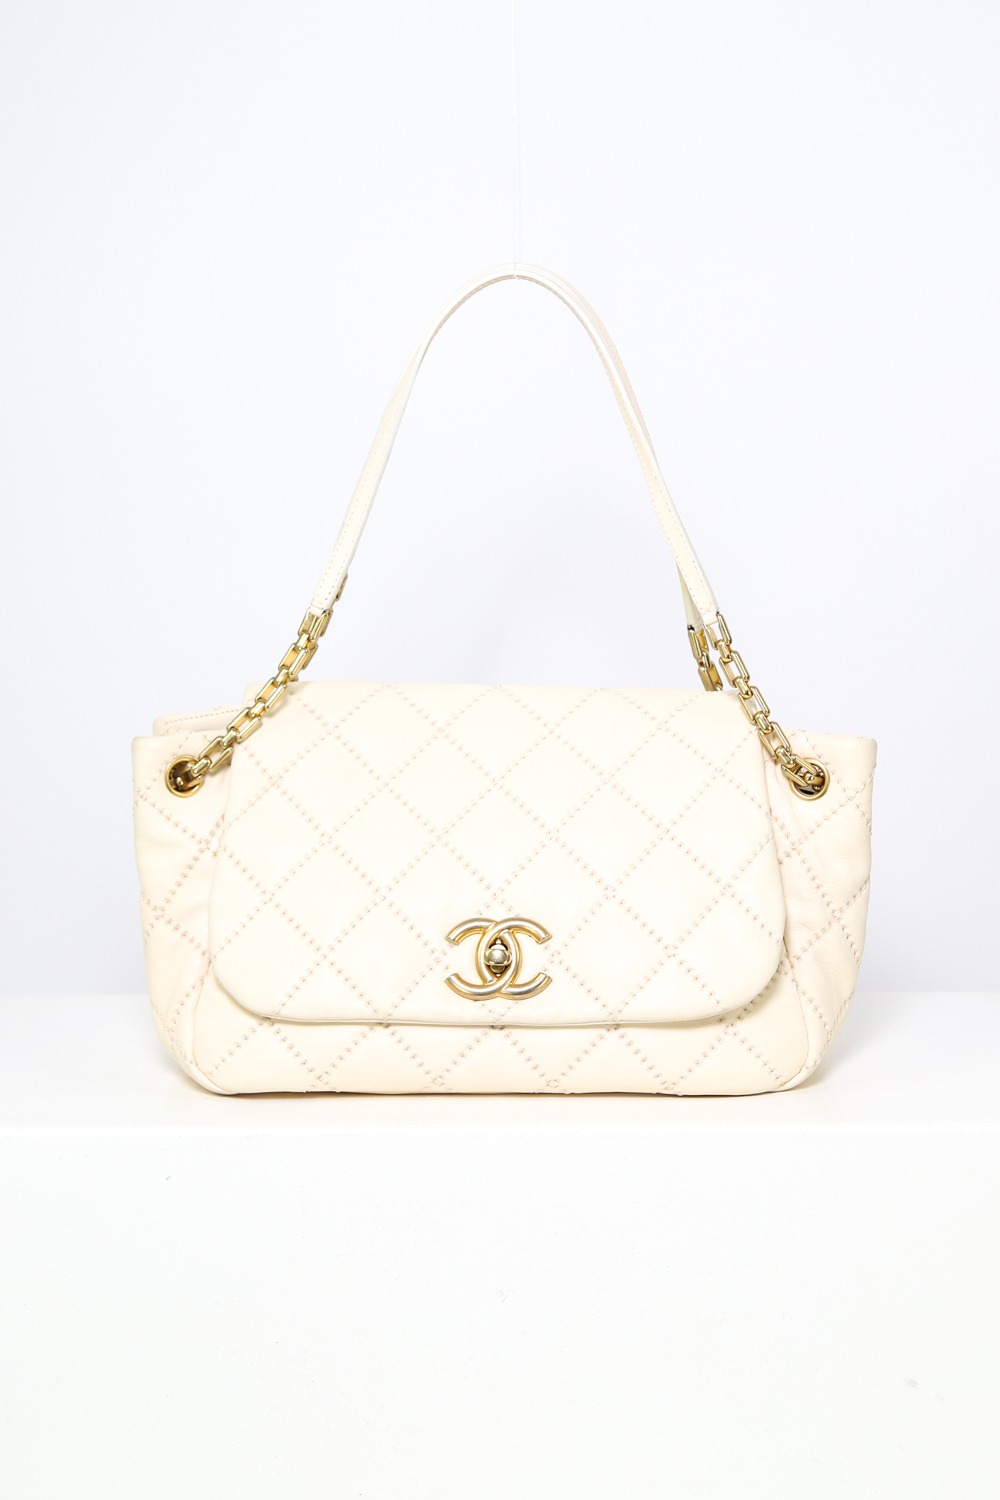 Chanel "Stitch Flap Bag" in Ecru